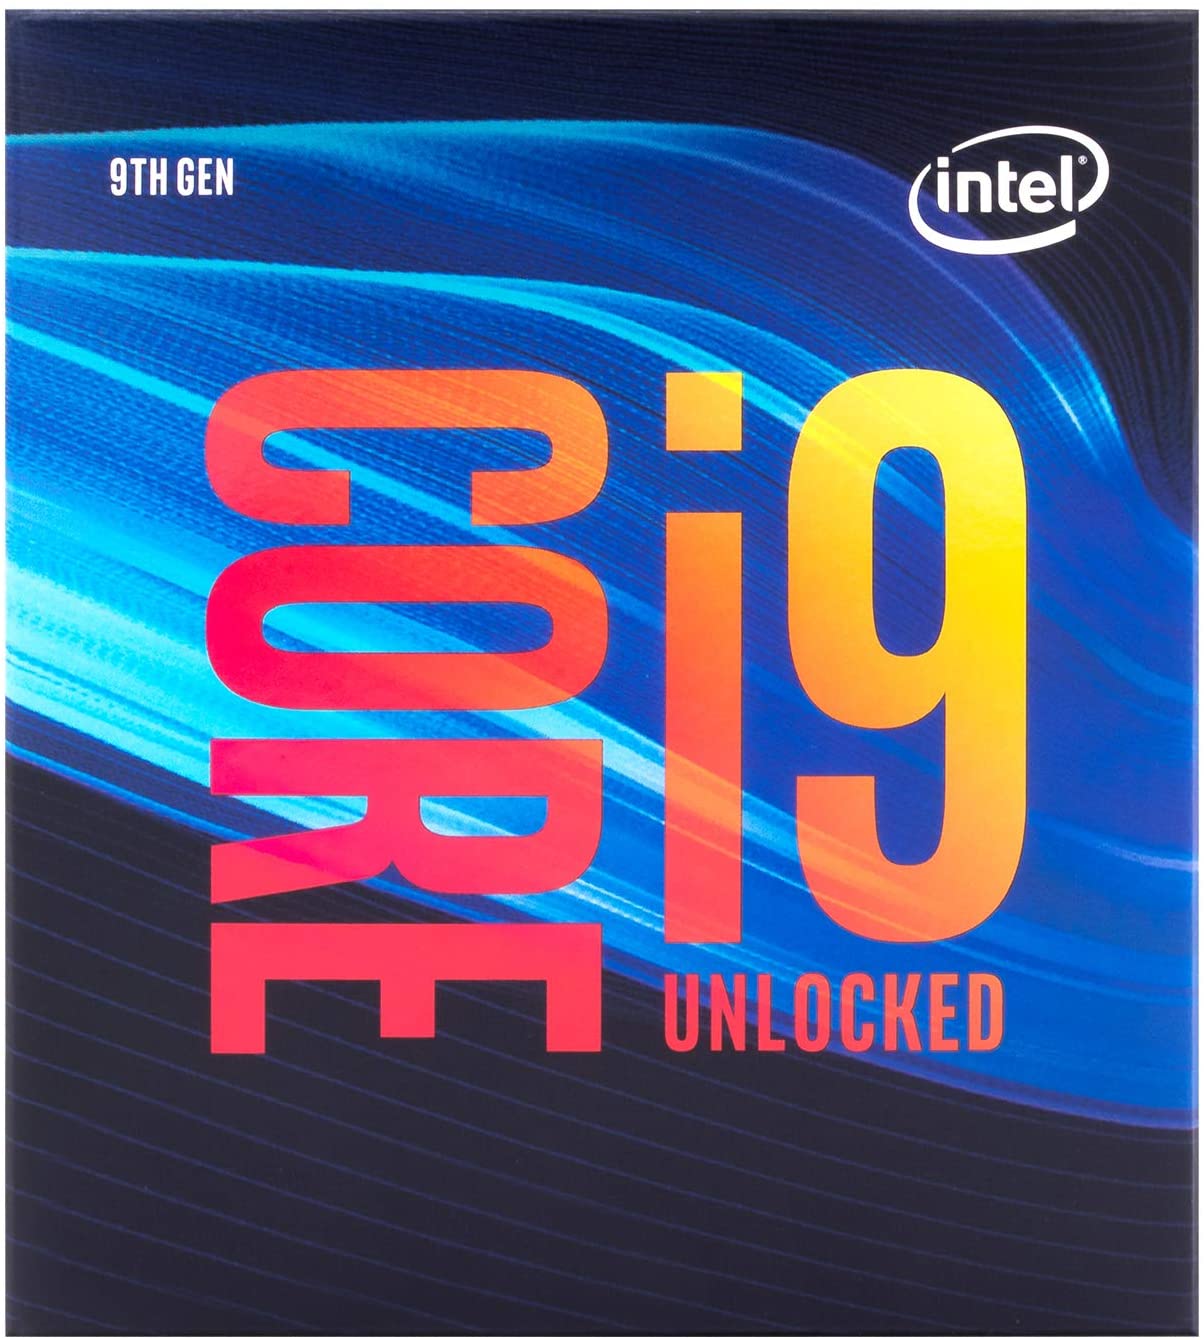 ★インテル Core i9-9900K デスクトッププロセッサー 8コア 最大5.0GHz アンロック LGA1151 300シリーズ 95W